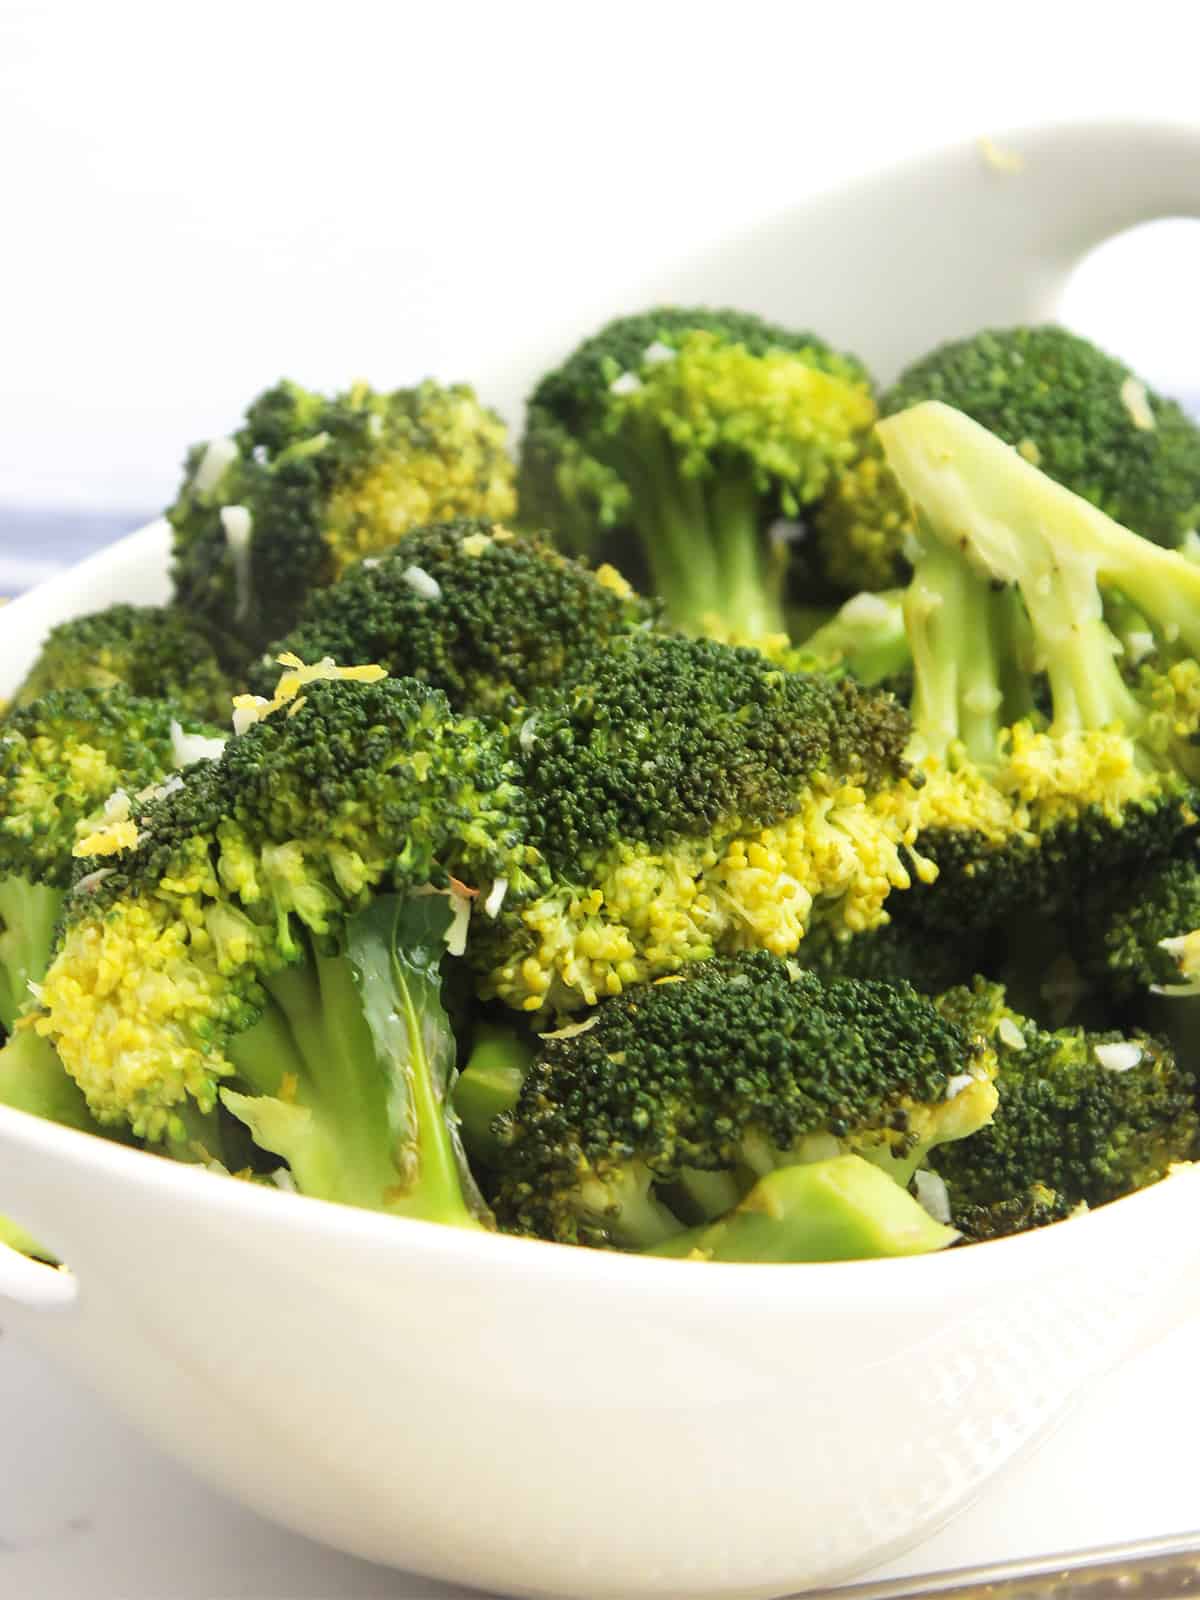 Sautéed Broccoli with Garlic and Lemon